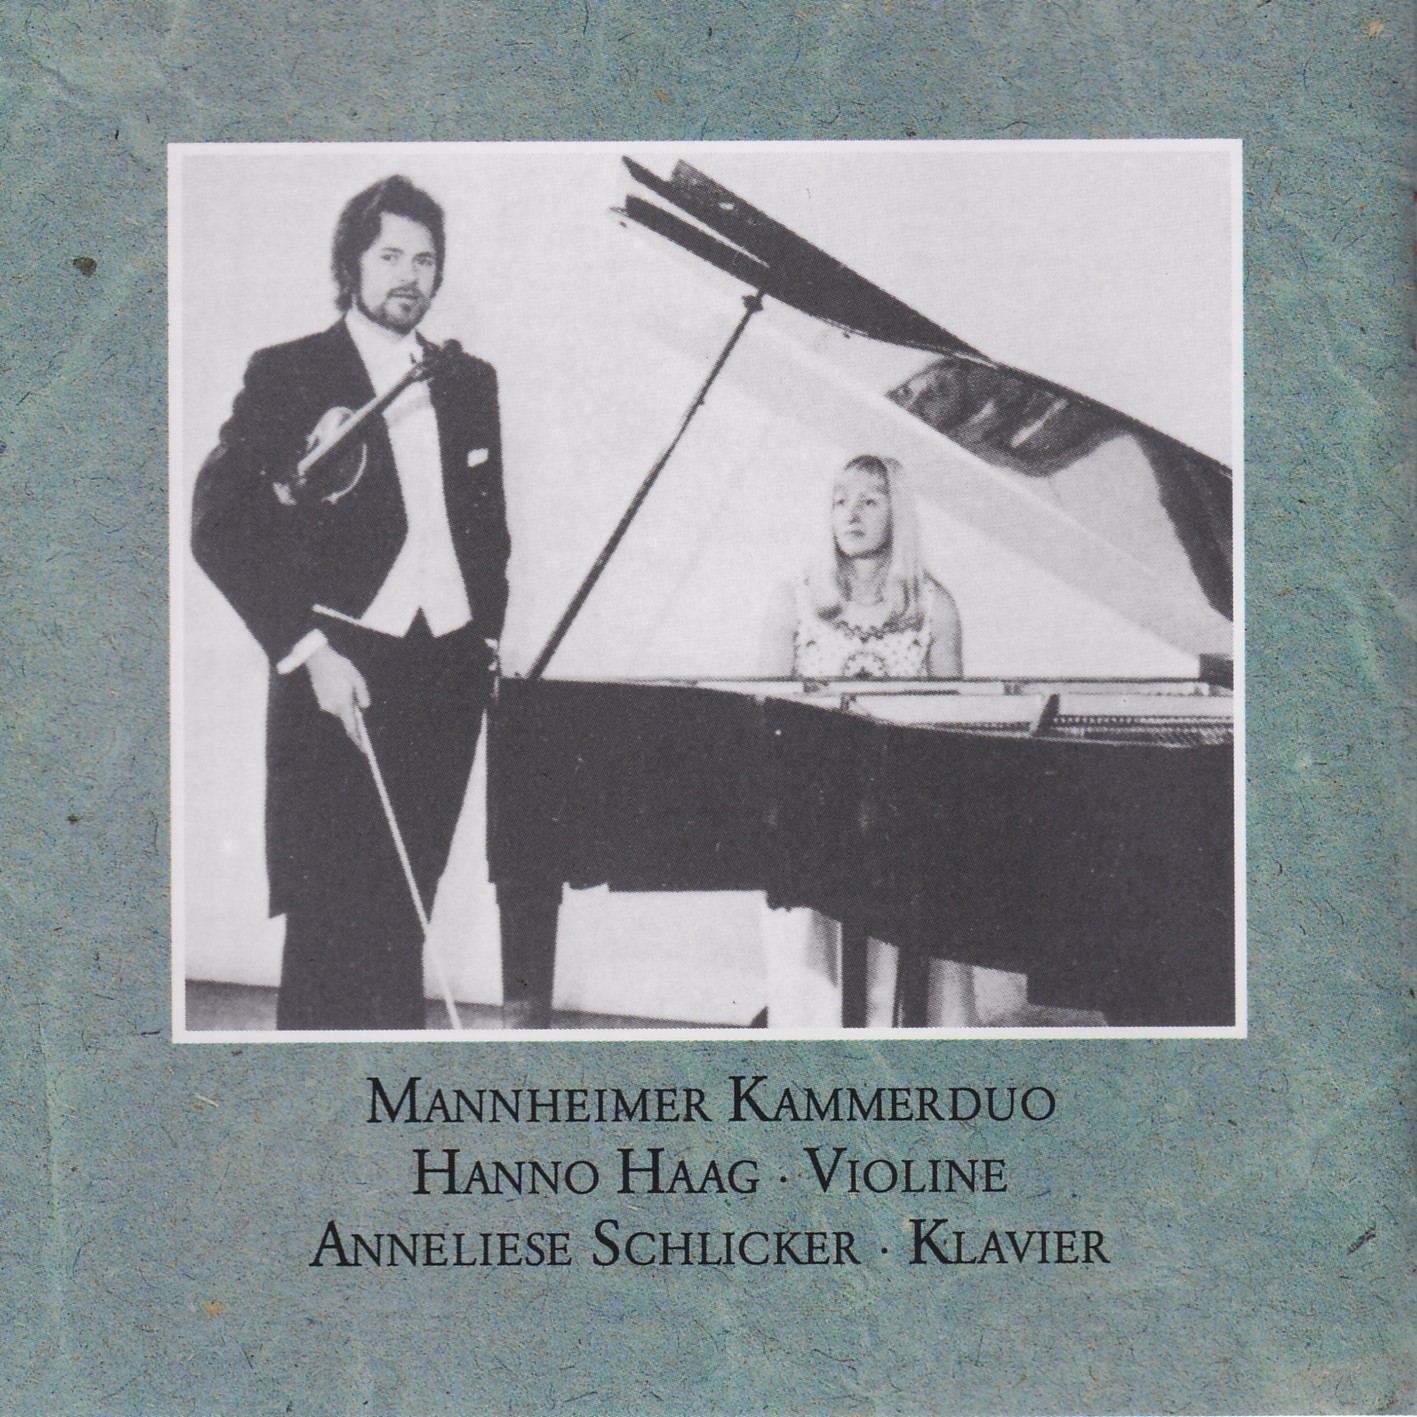 Mozart in Mannheim Vol.1 (Violine und Klavier)